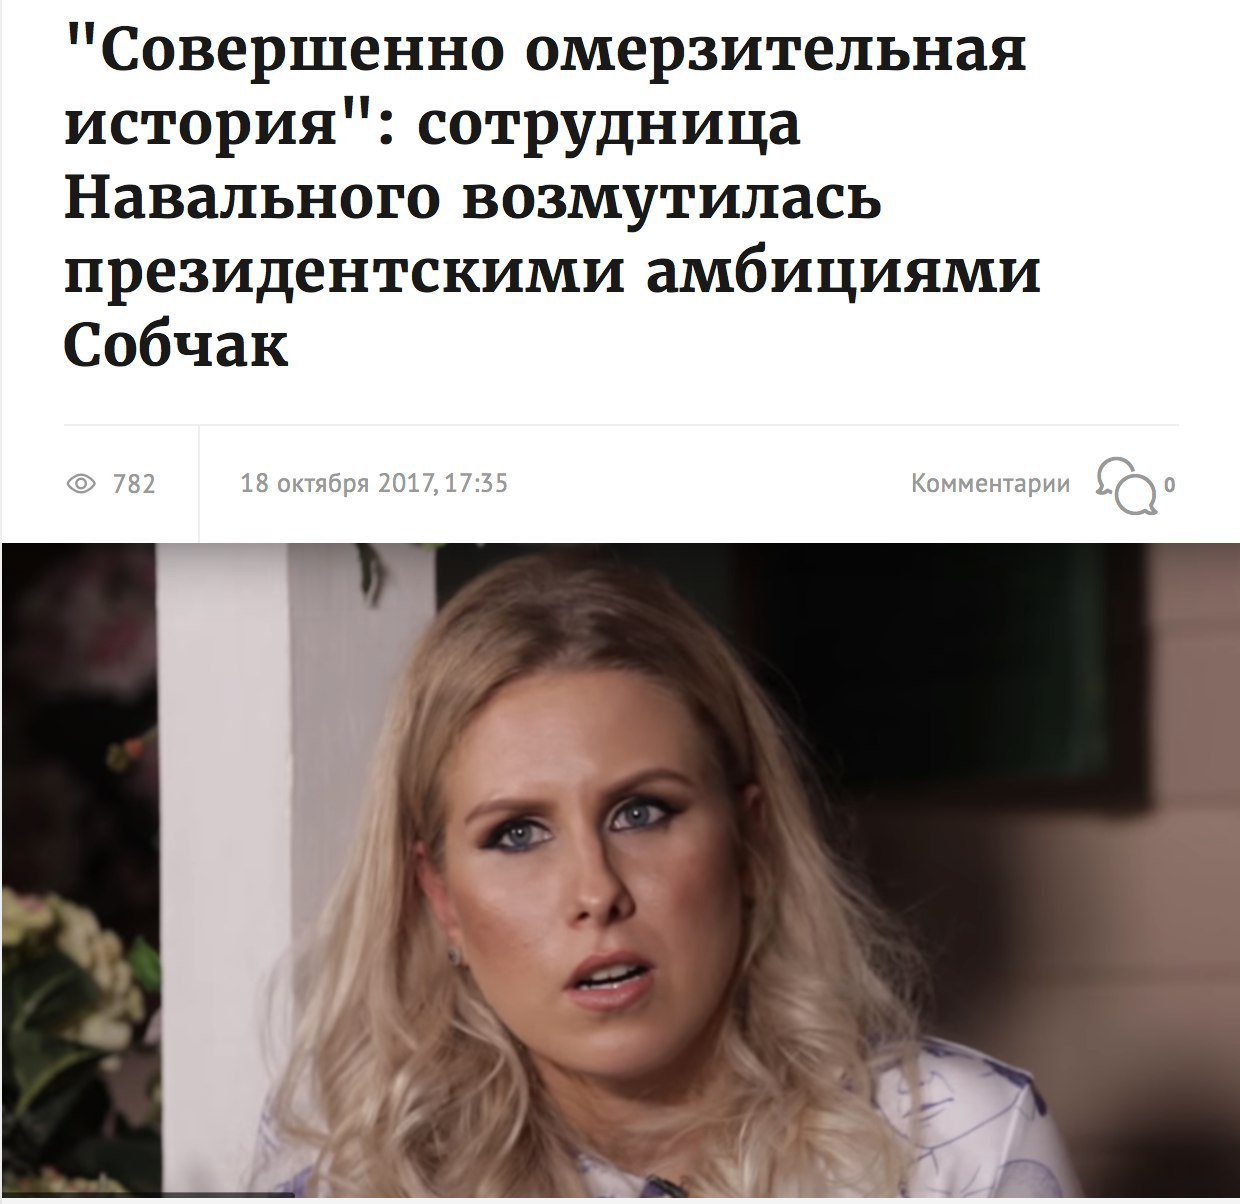 Работница Навального